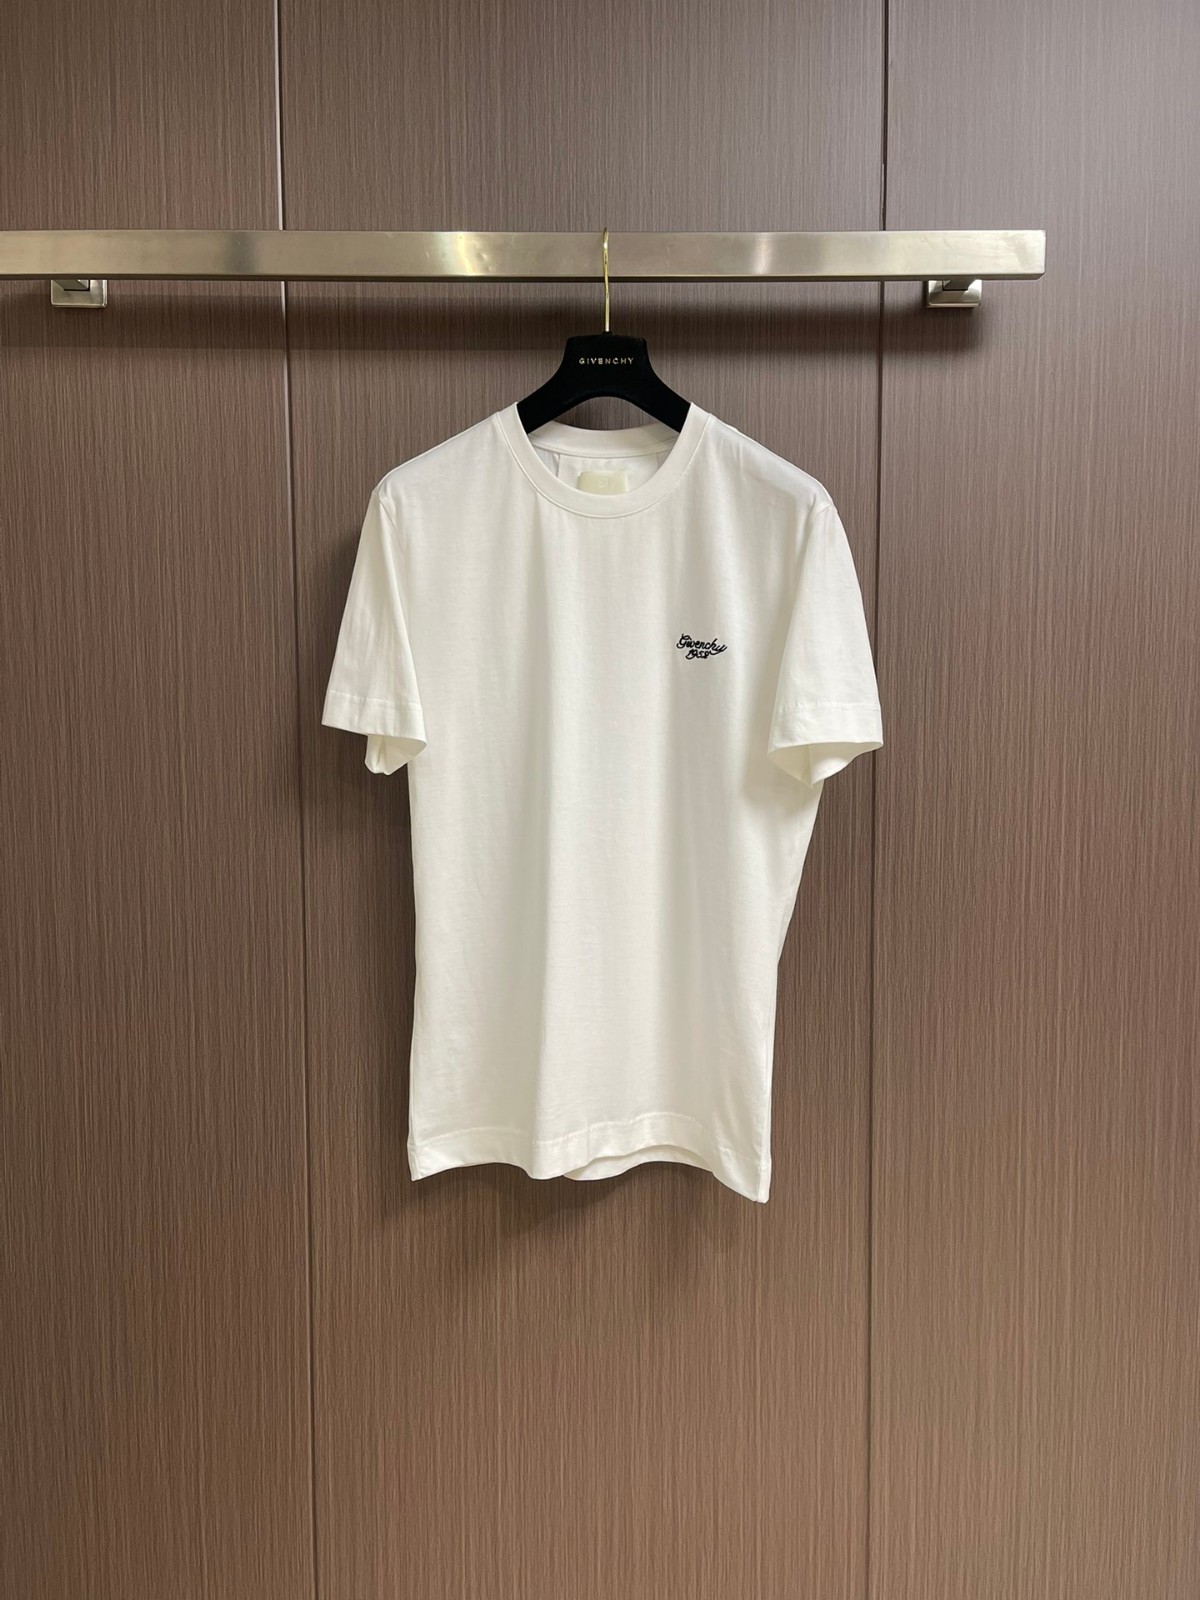 シンプル 人気 ロゴ クルーネック 半袖Tシャツ ジバンシィ Tシャツ 偽物 ホワイト